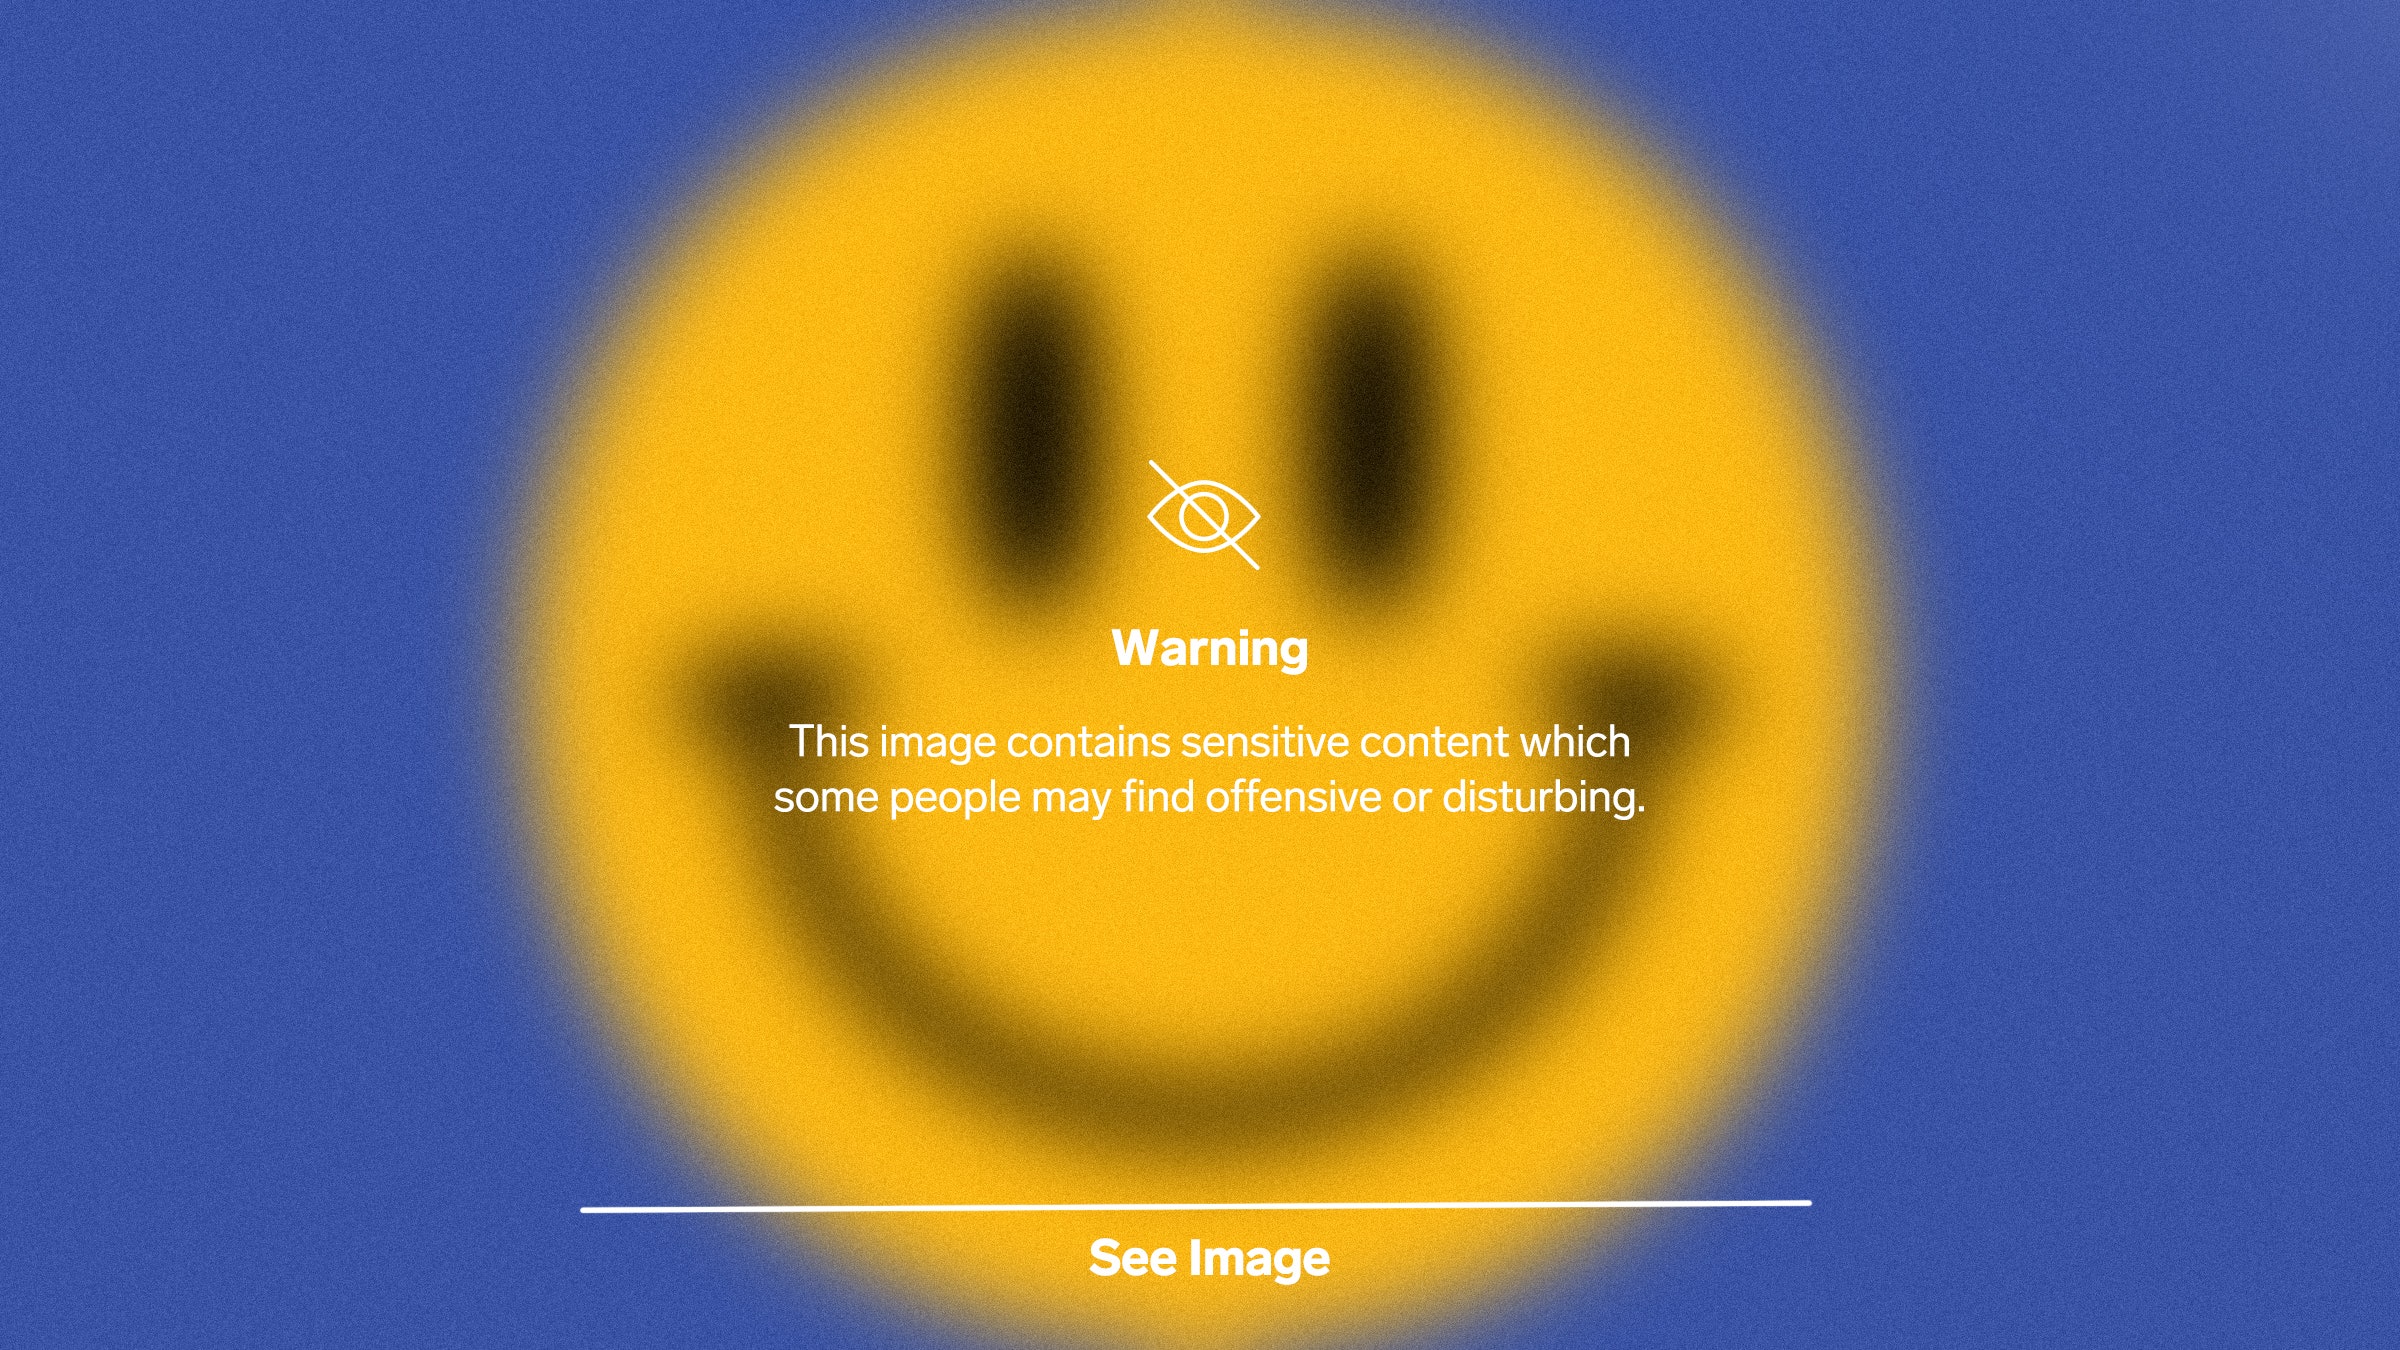 Ilustração do emoticon com um aviso sobre o conteúdo sensível no Instagram imposto a ele